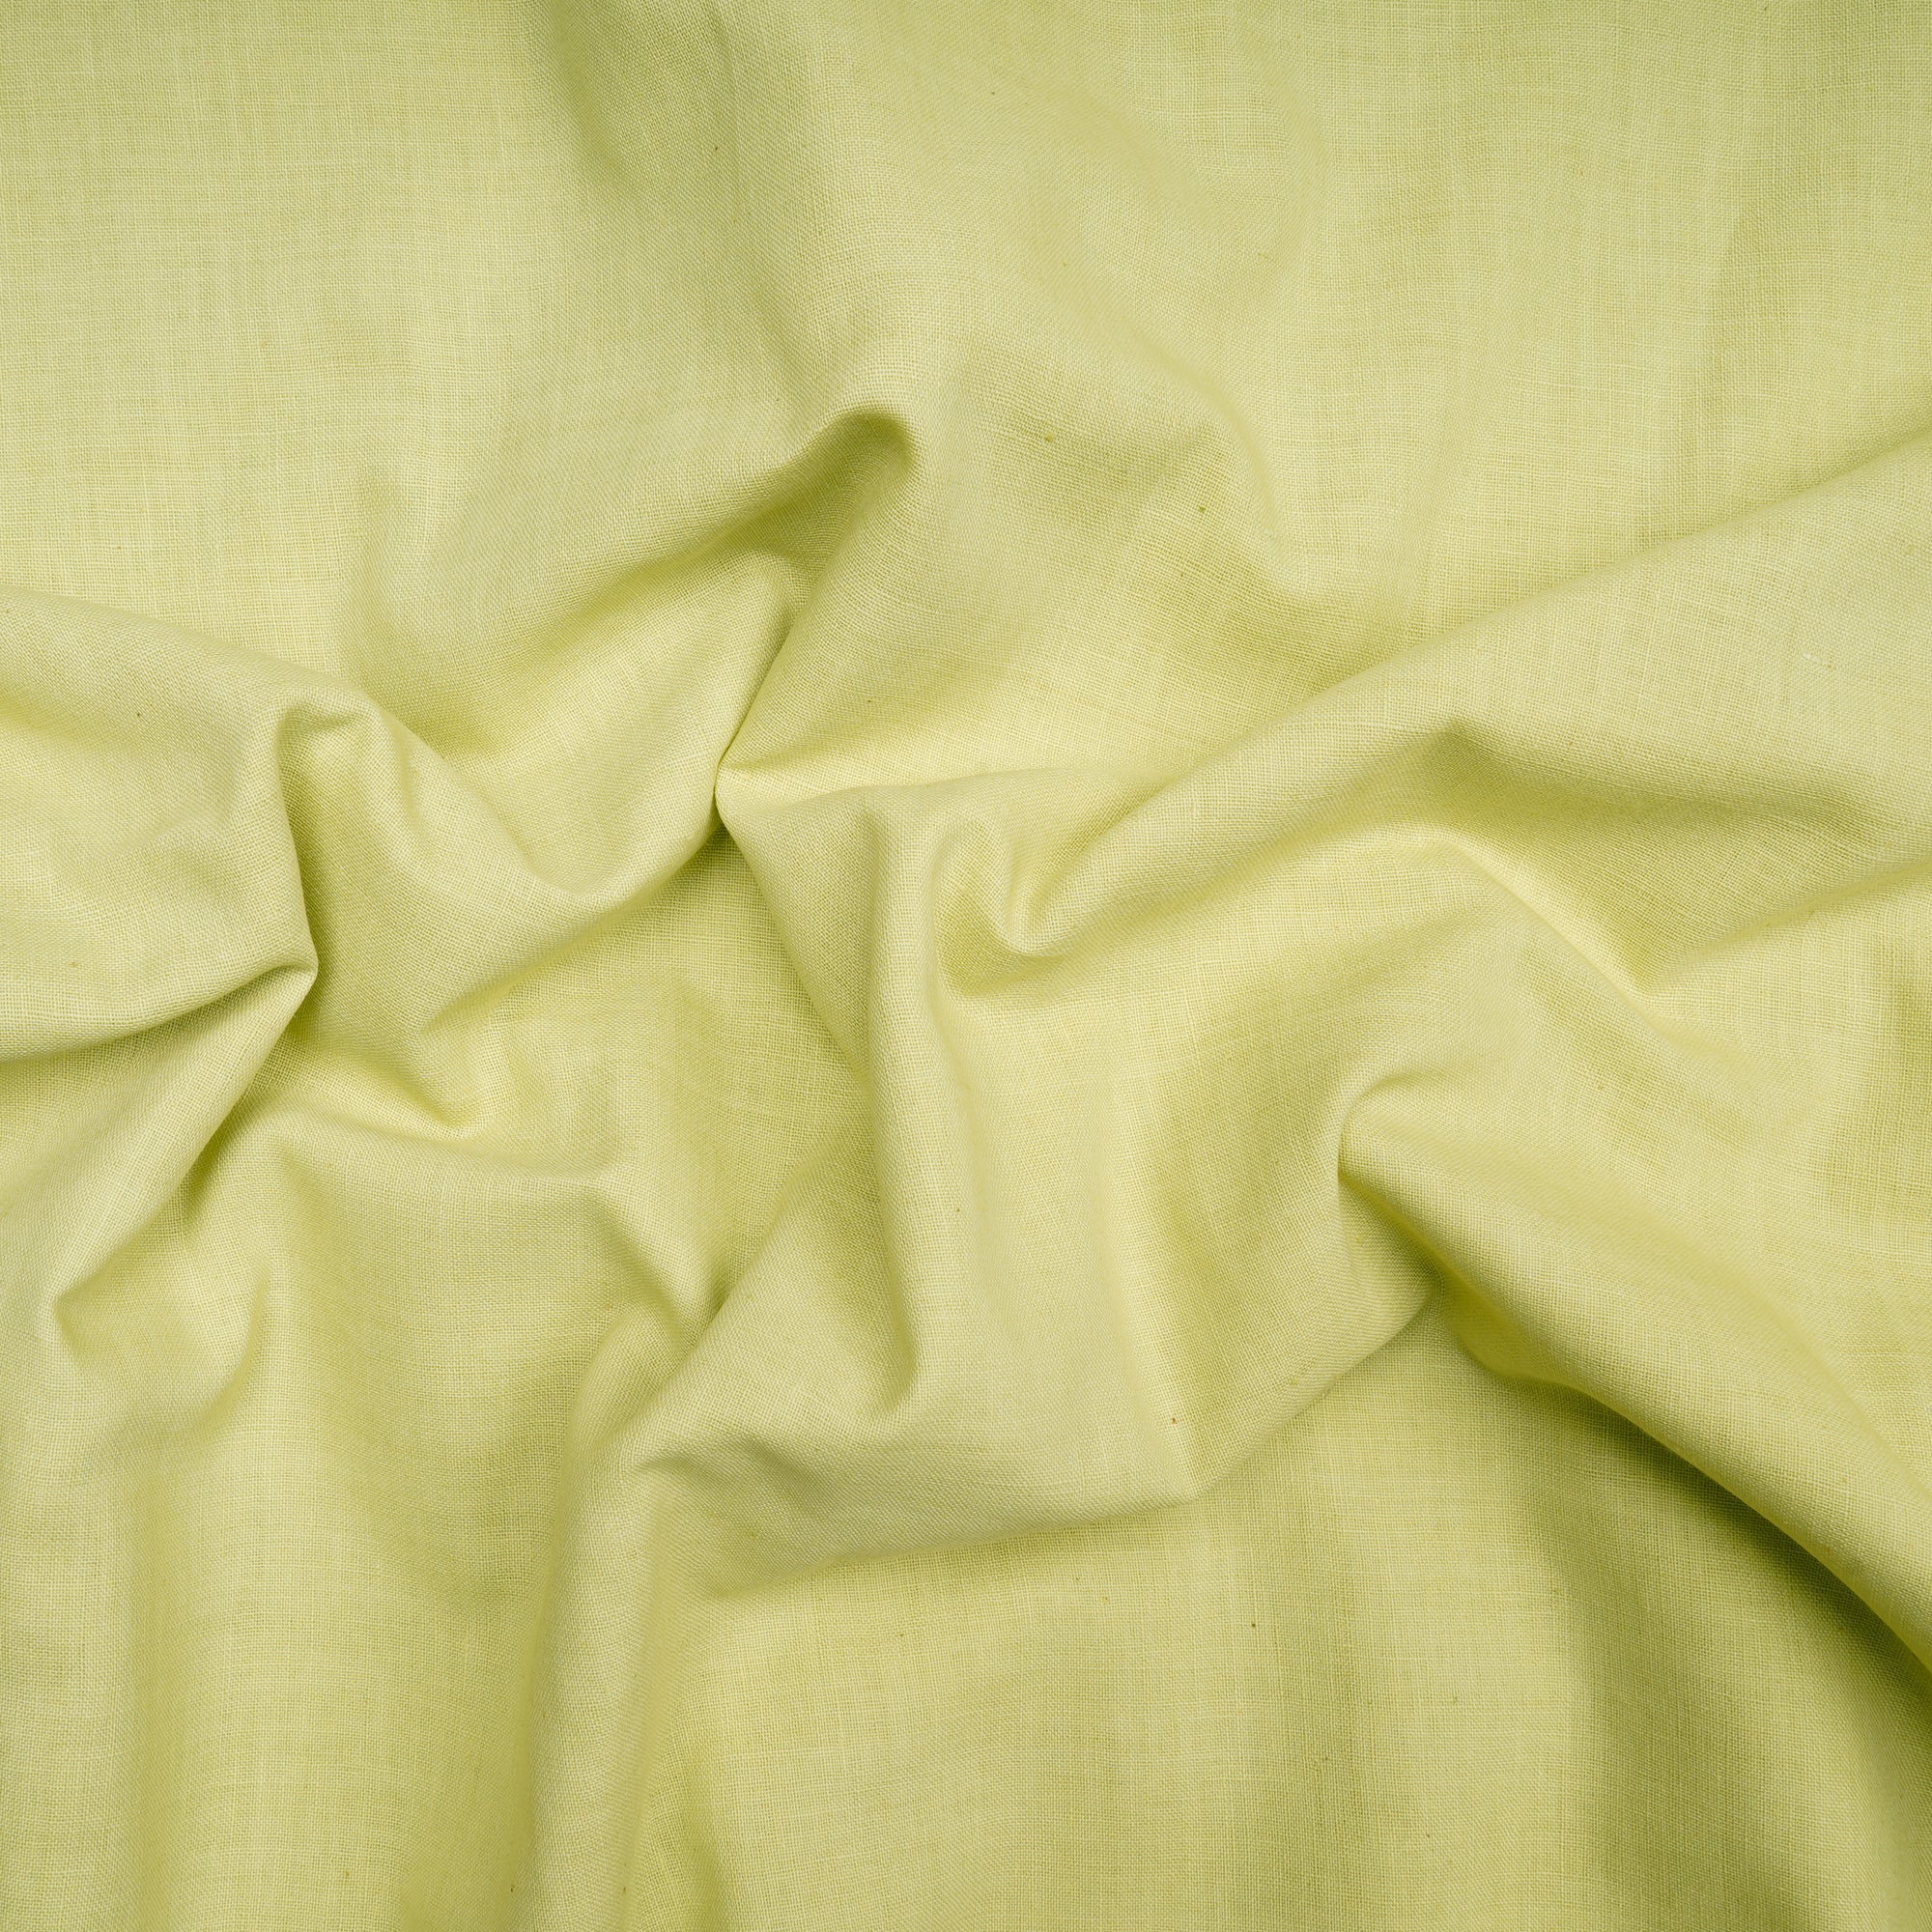 Lime Green Dyed Handwoven Handspun Muslin Cotton Fabric